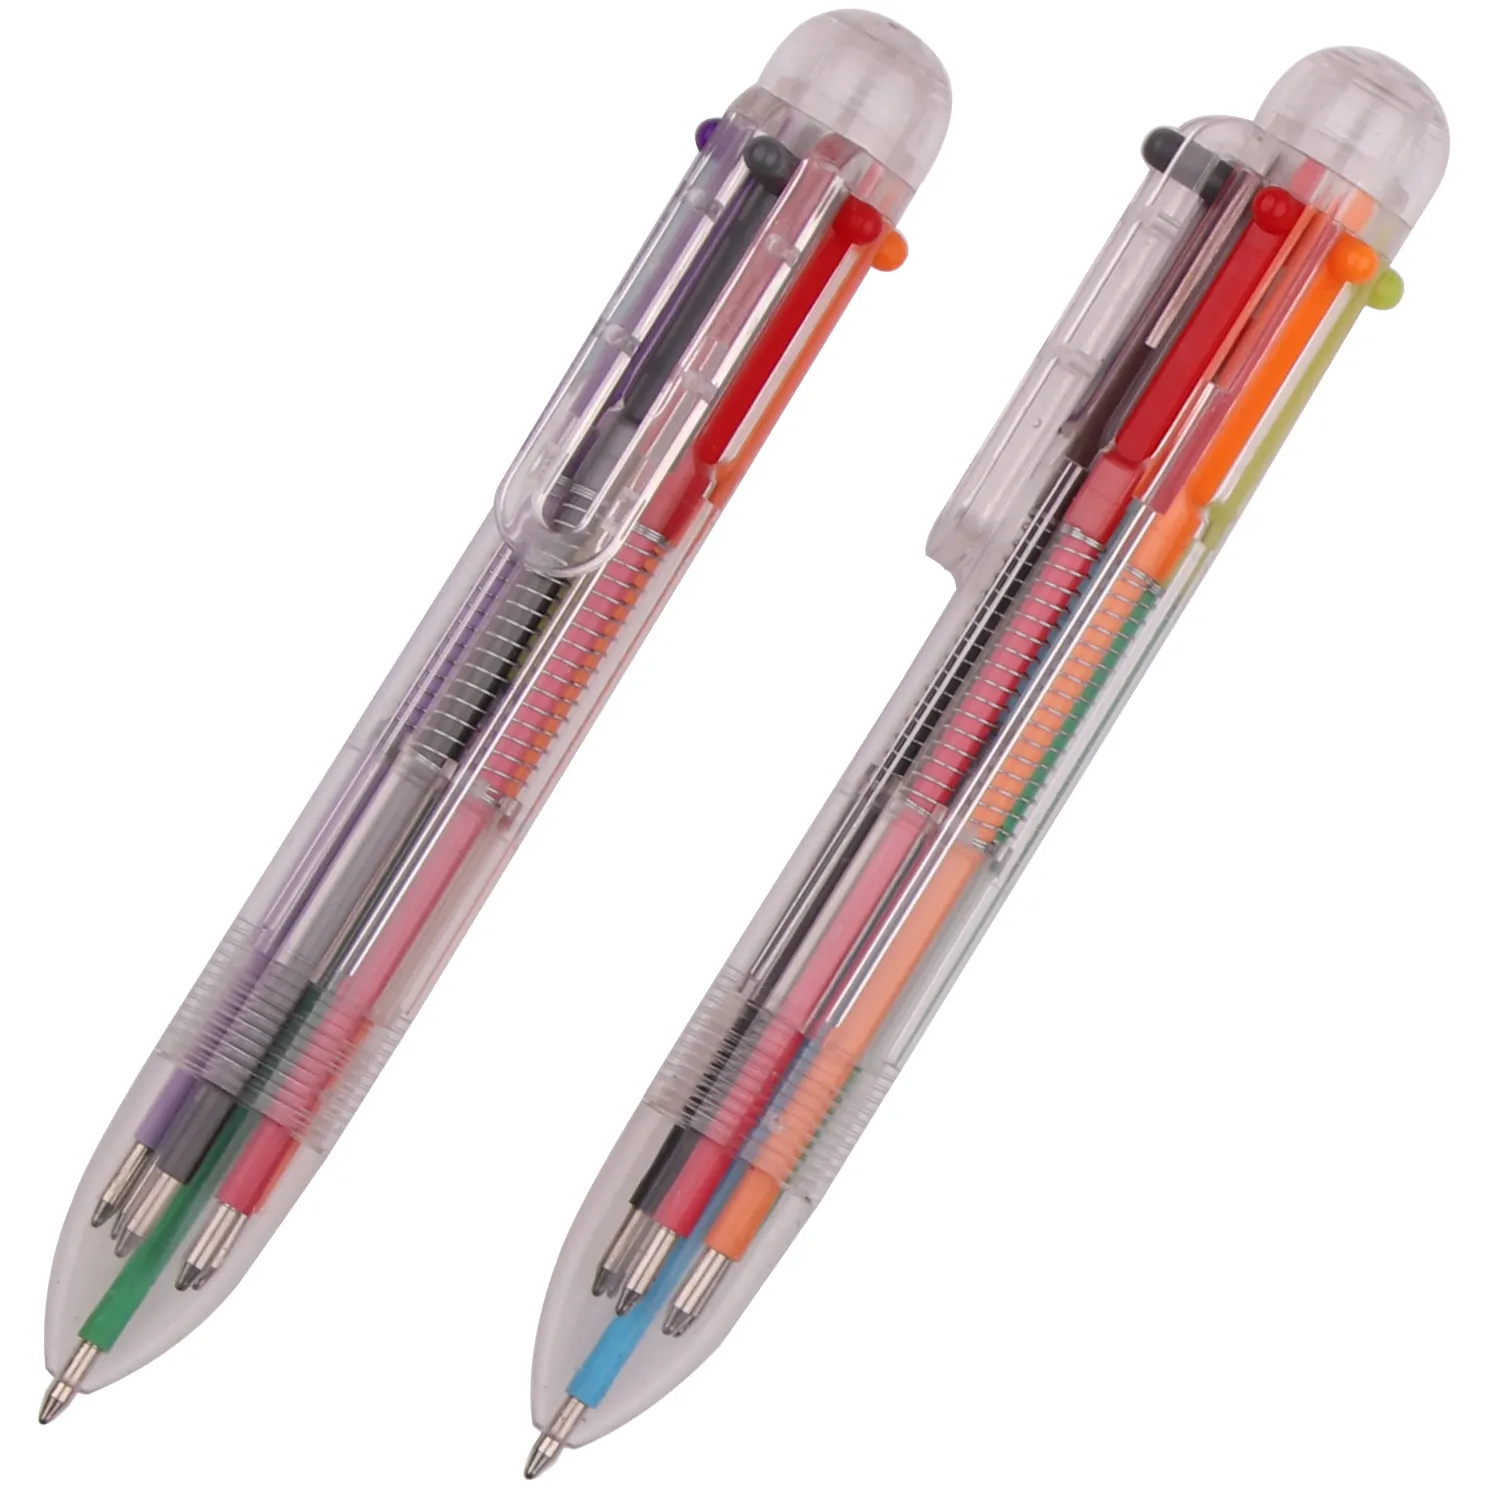 अनुकूलित पूर्ण रंग डिजाइन बहुरंगा में 6 रंग लघु 6 1 multifunction कलम छोटे प्लास्टिक कलम 6 1 कलम में